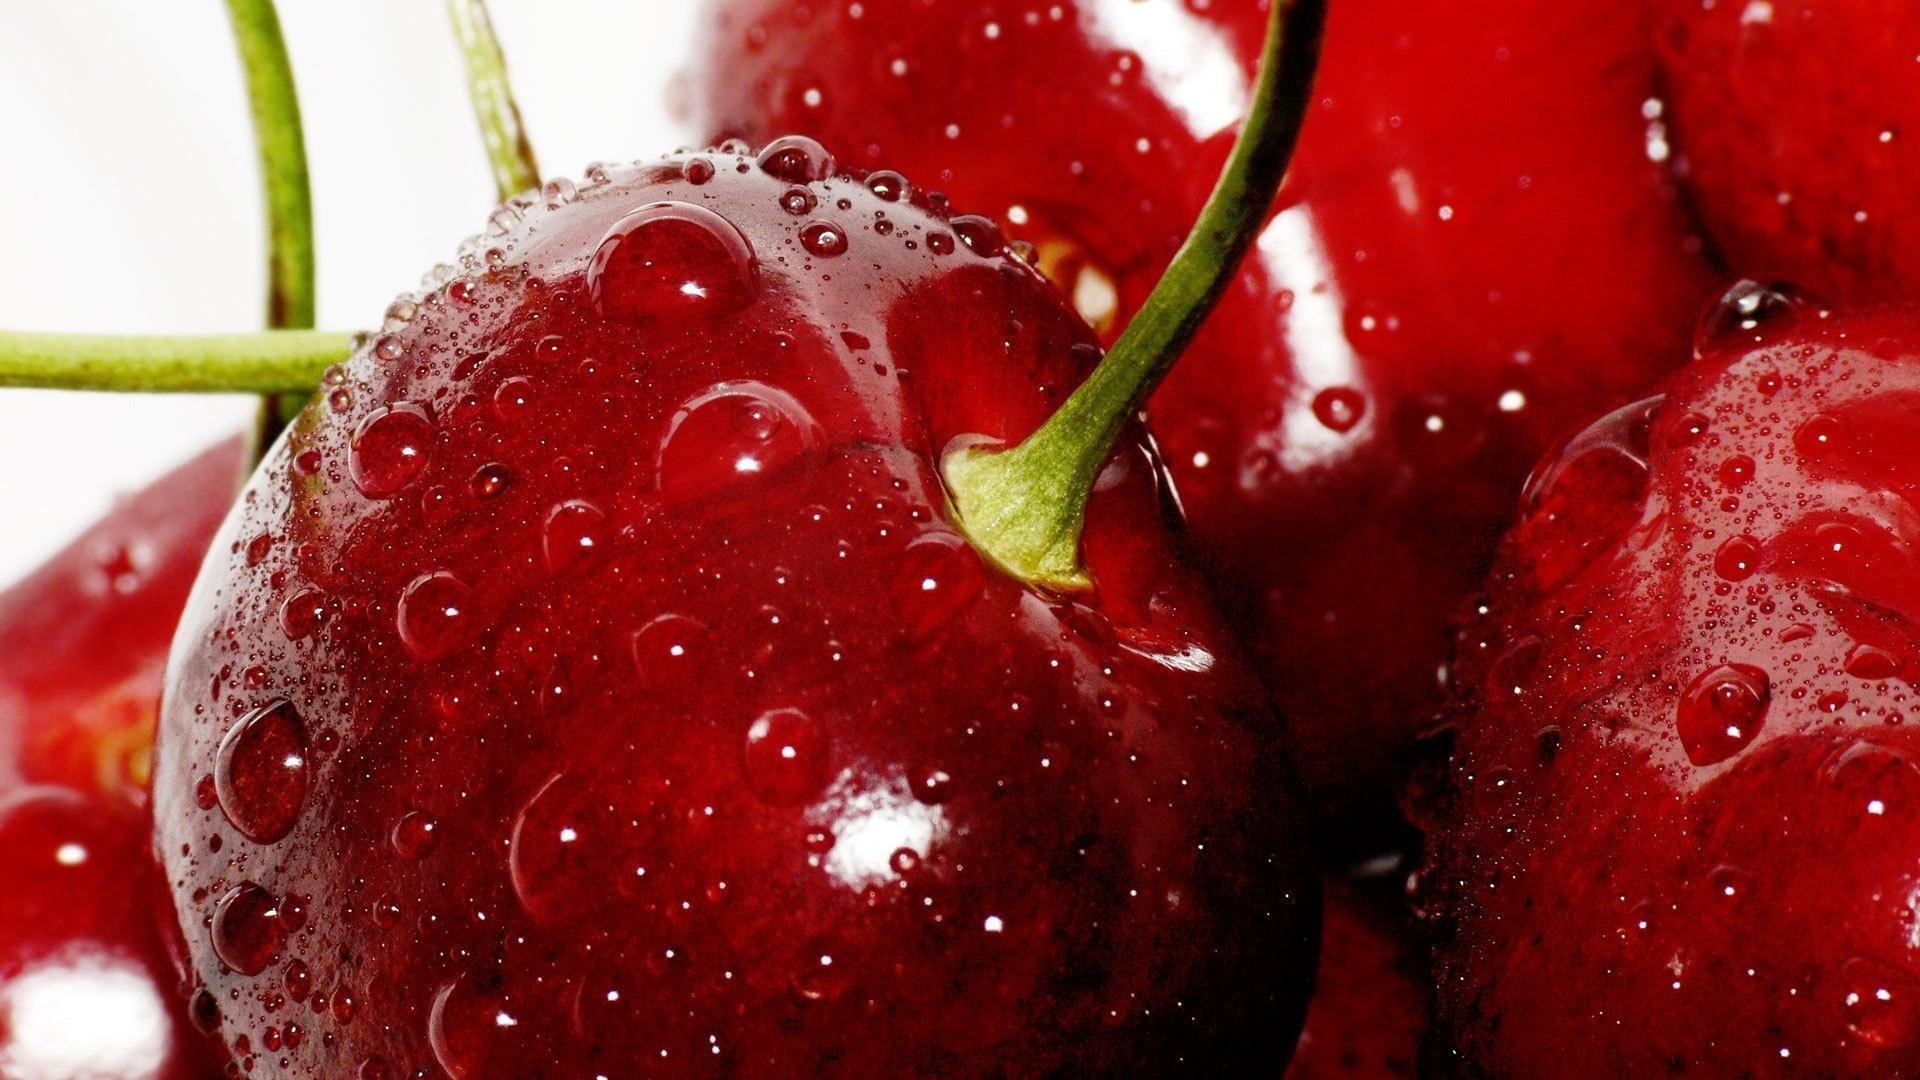 Free download wallpaper Sweet Cherry, Berries, Food on your PC desktop